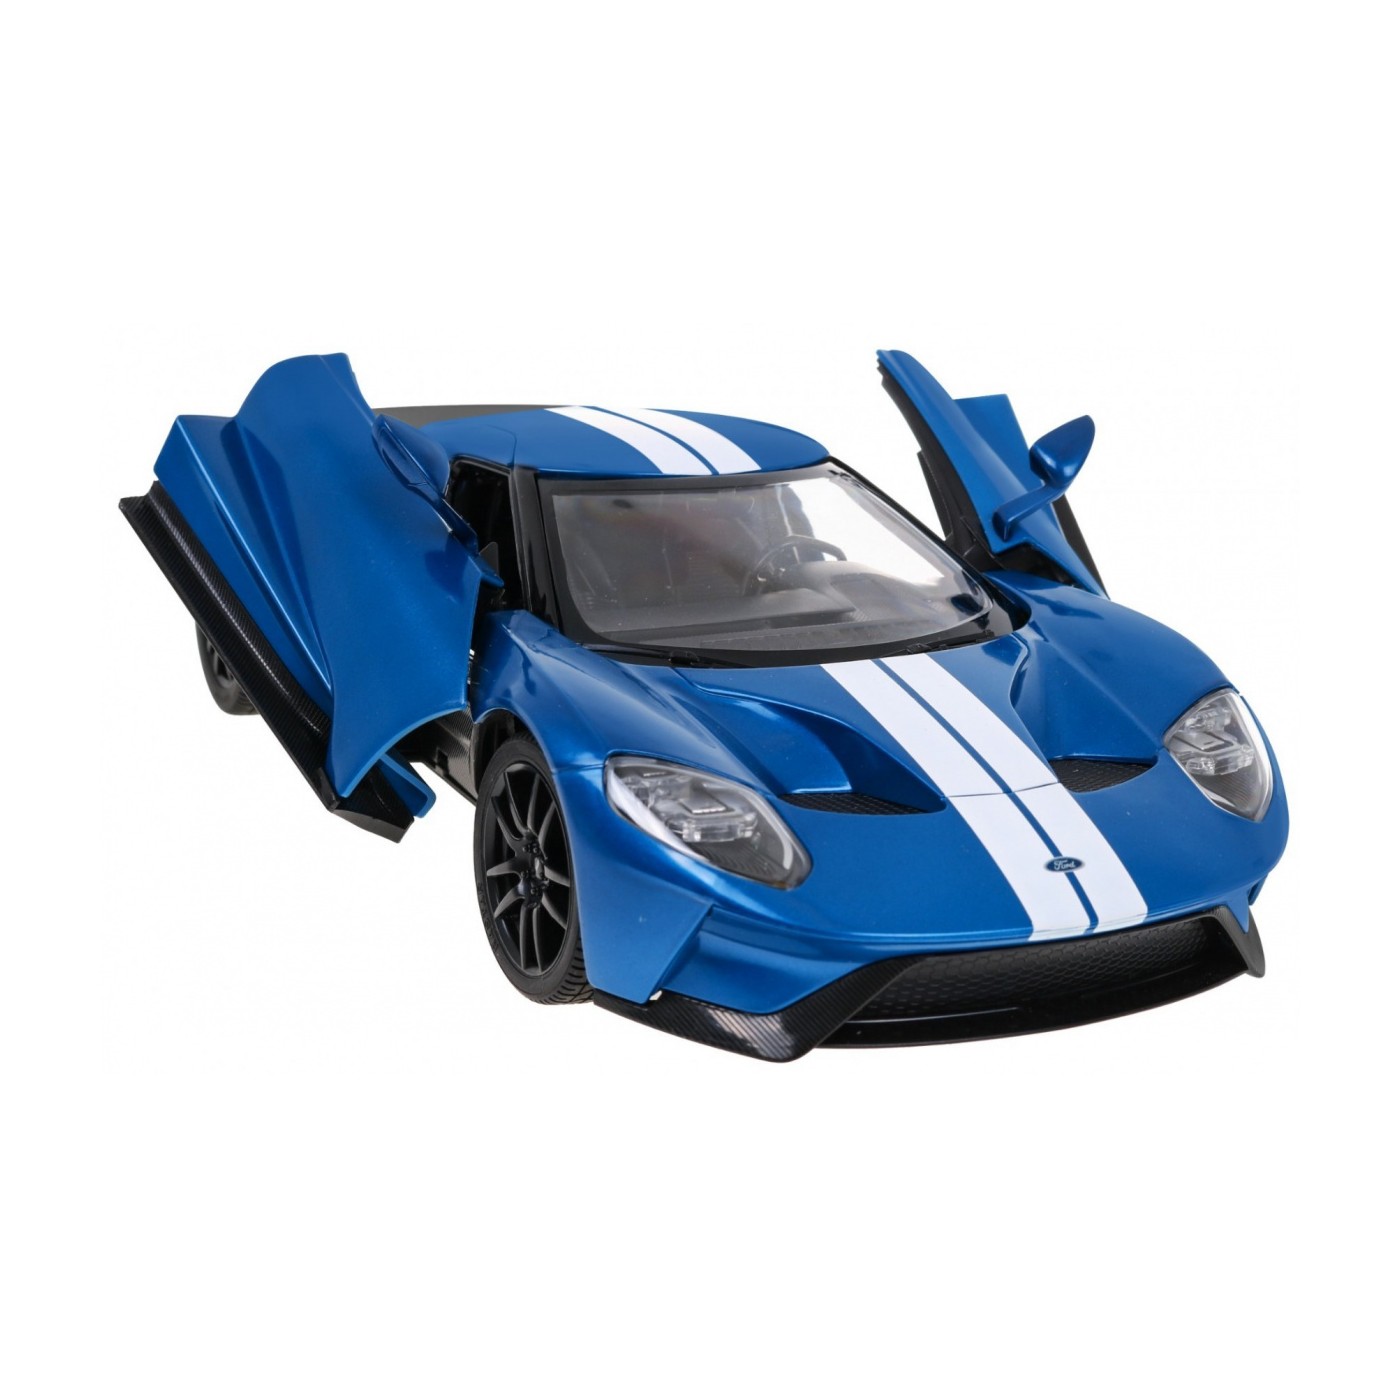 R/C toy car Ford GT 1:14 RASTAR